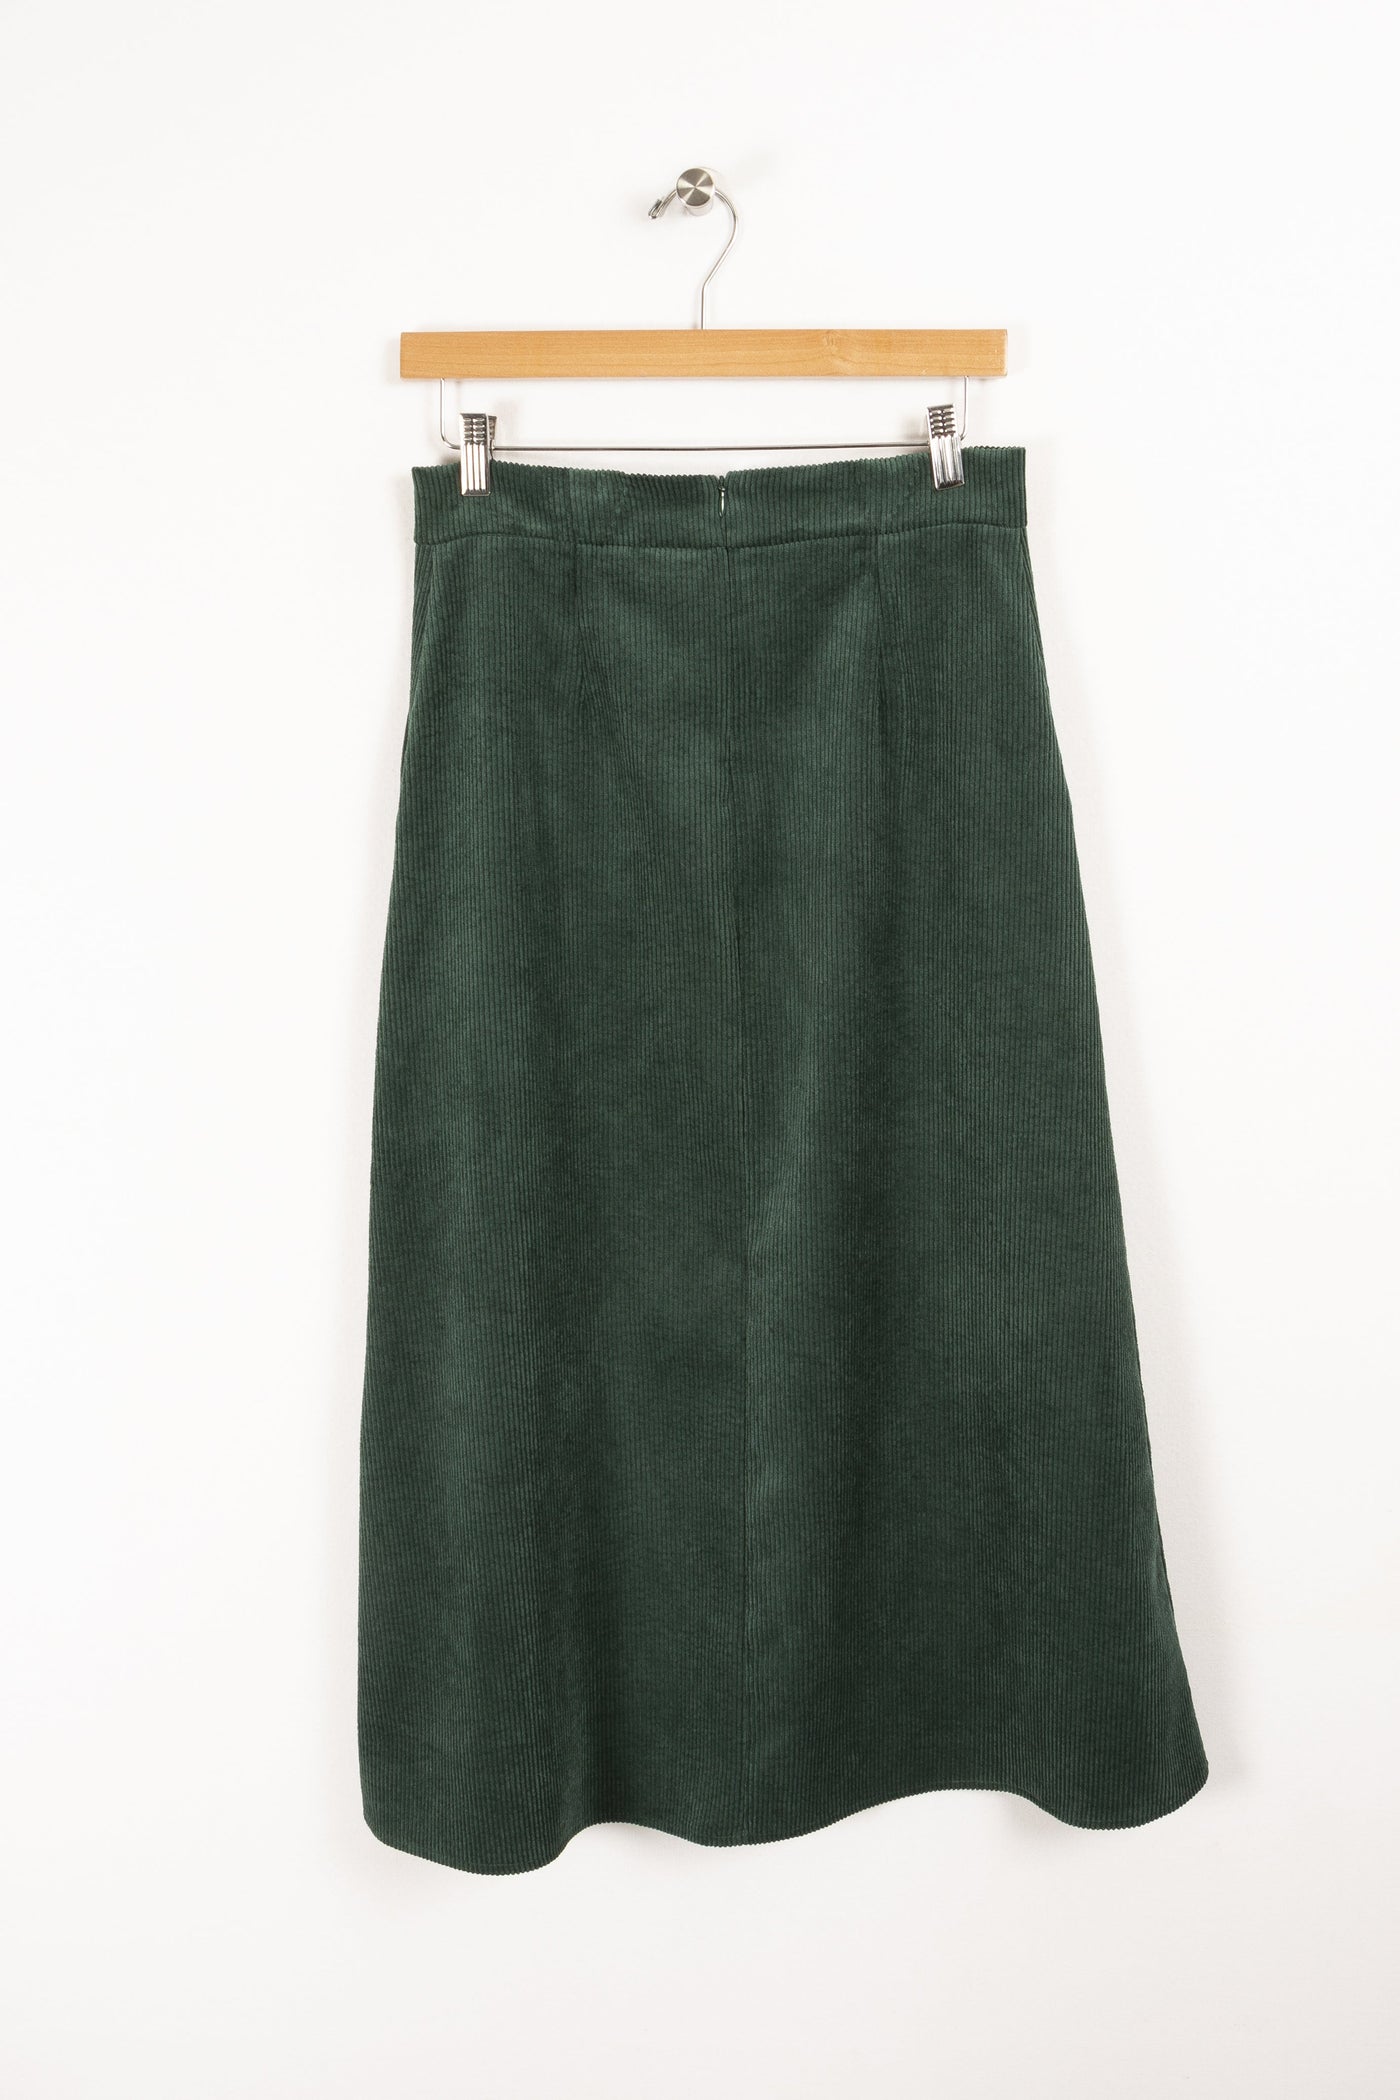 Green skirt - XS / 34